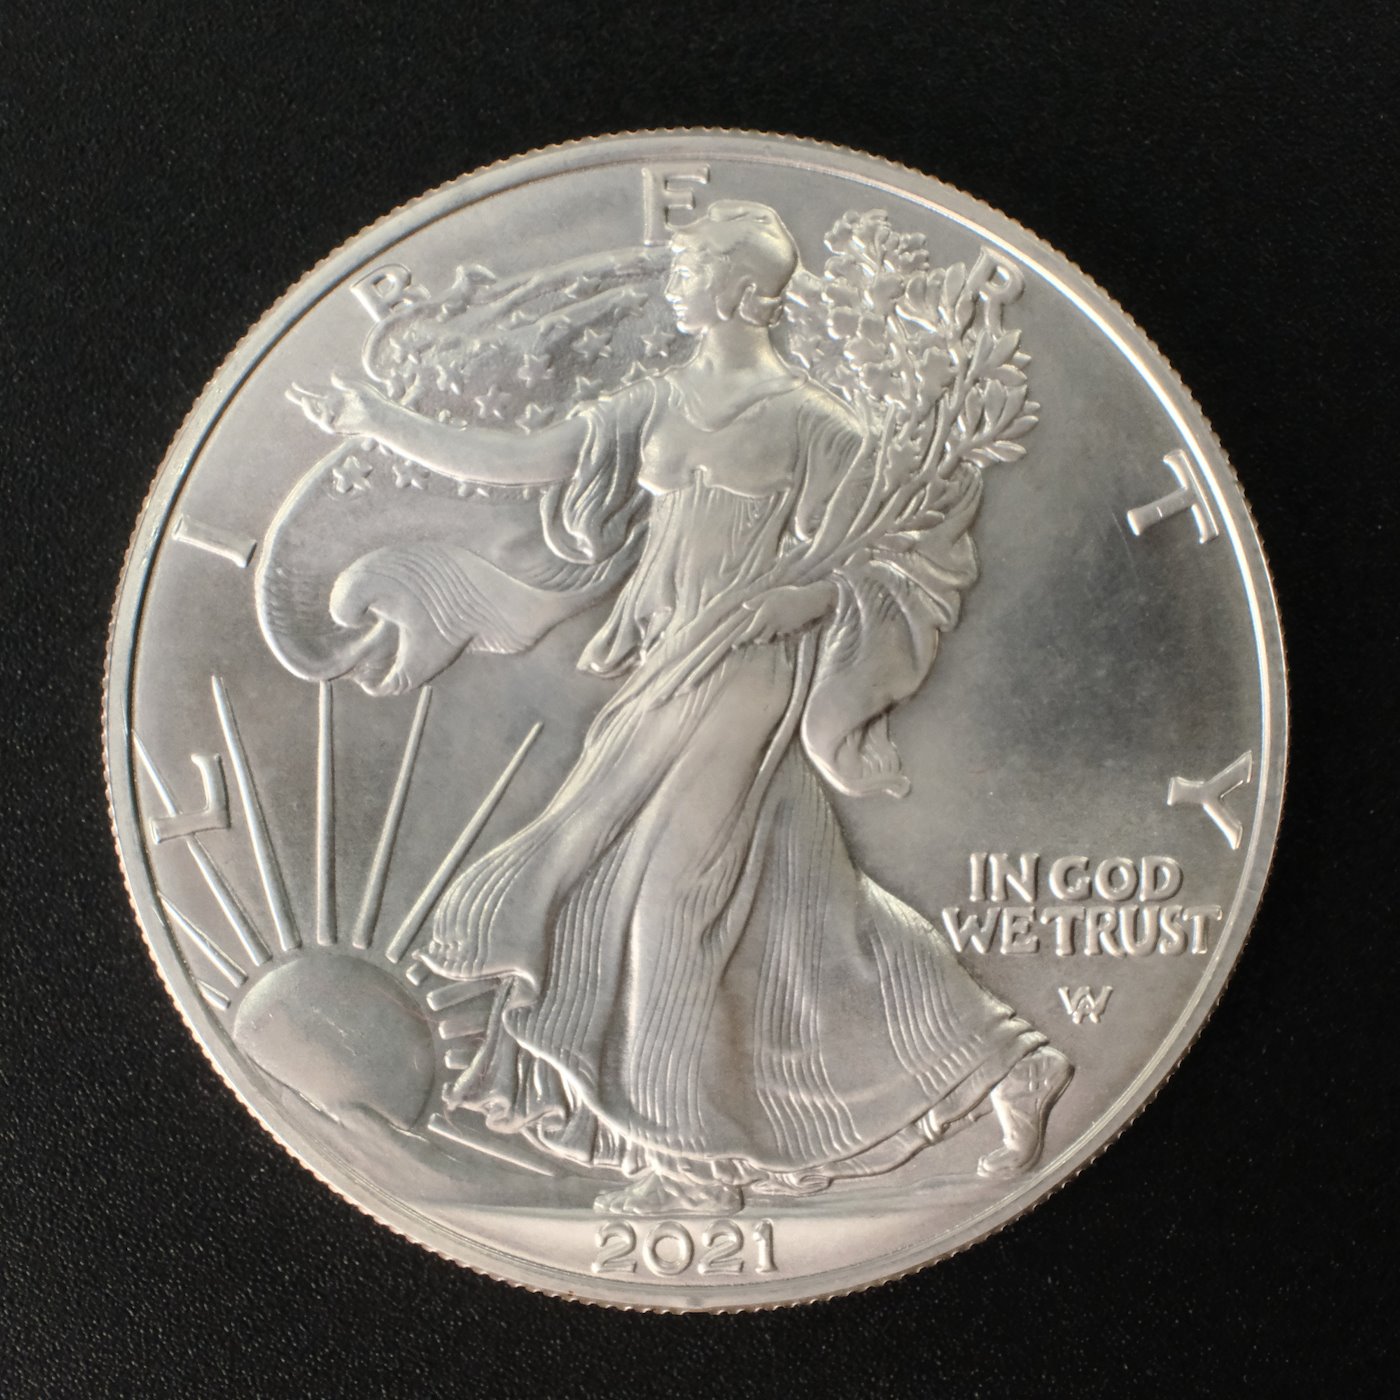 Mince - 1 kus Stříbrné mince 1 Unce 1 dolar SVOBODA 2021 II.typ. Stříbro 999/1000, hrubá hmotnost 31,15 g